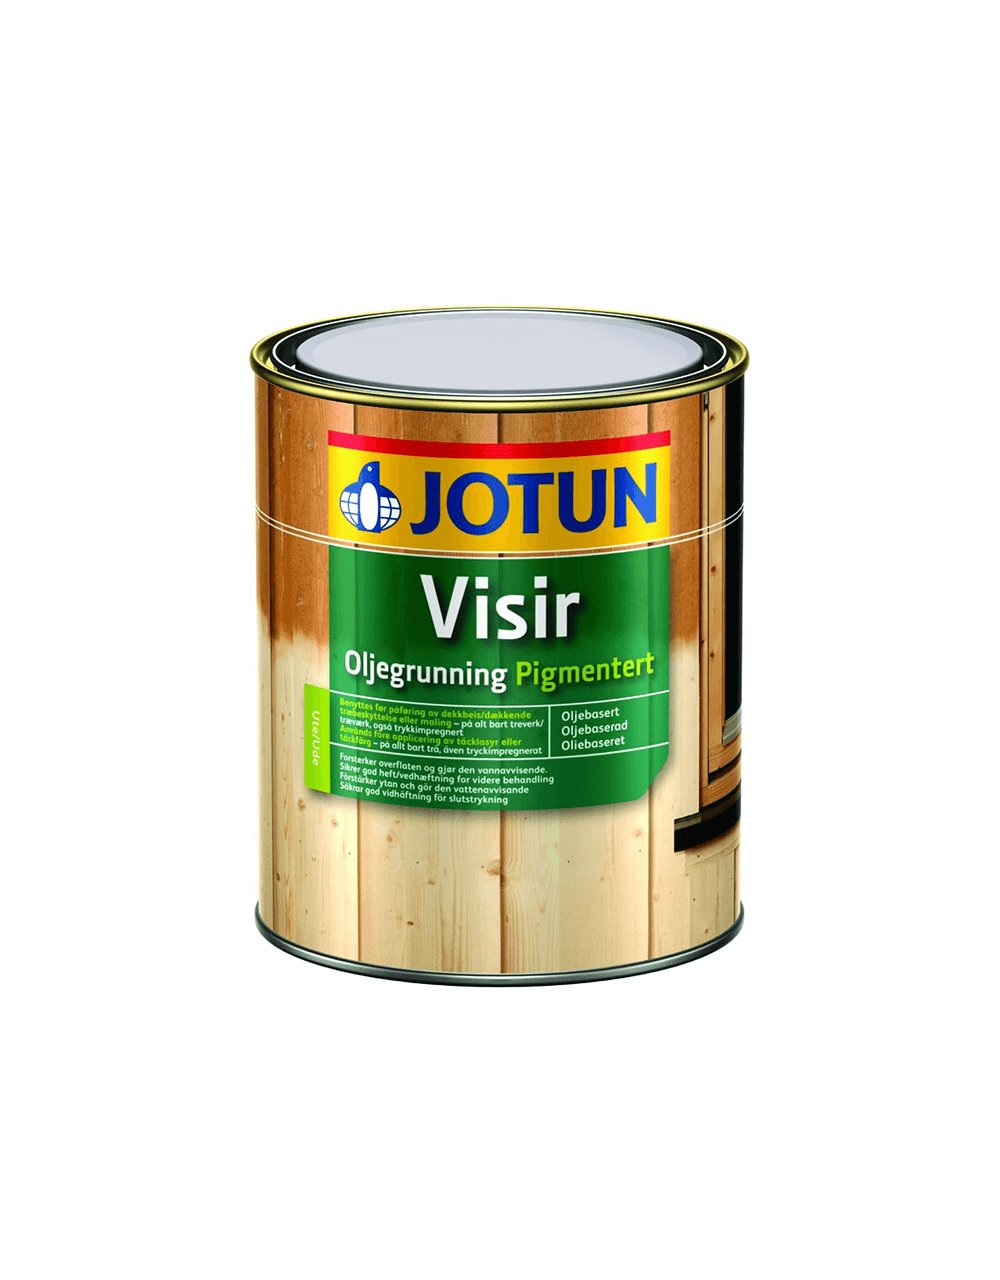 Jotun Visir Oliegrunding Pigmenteret - 2,7 L